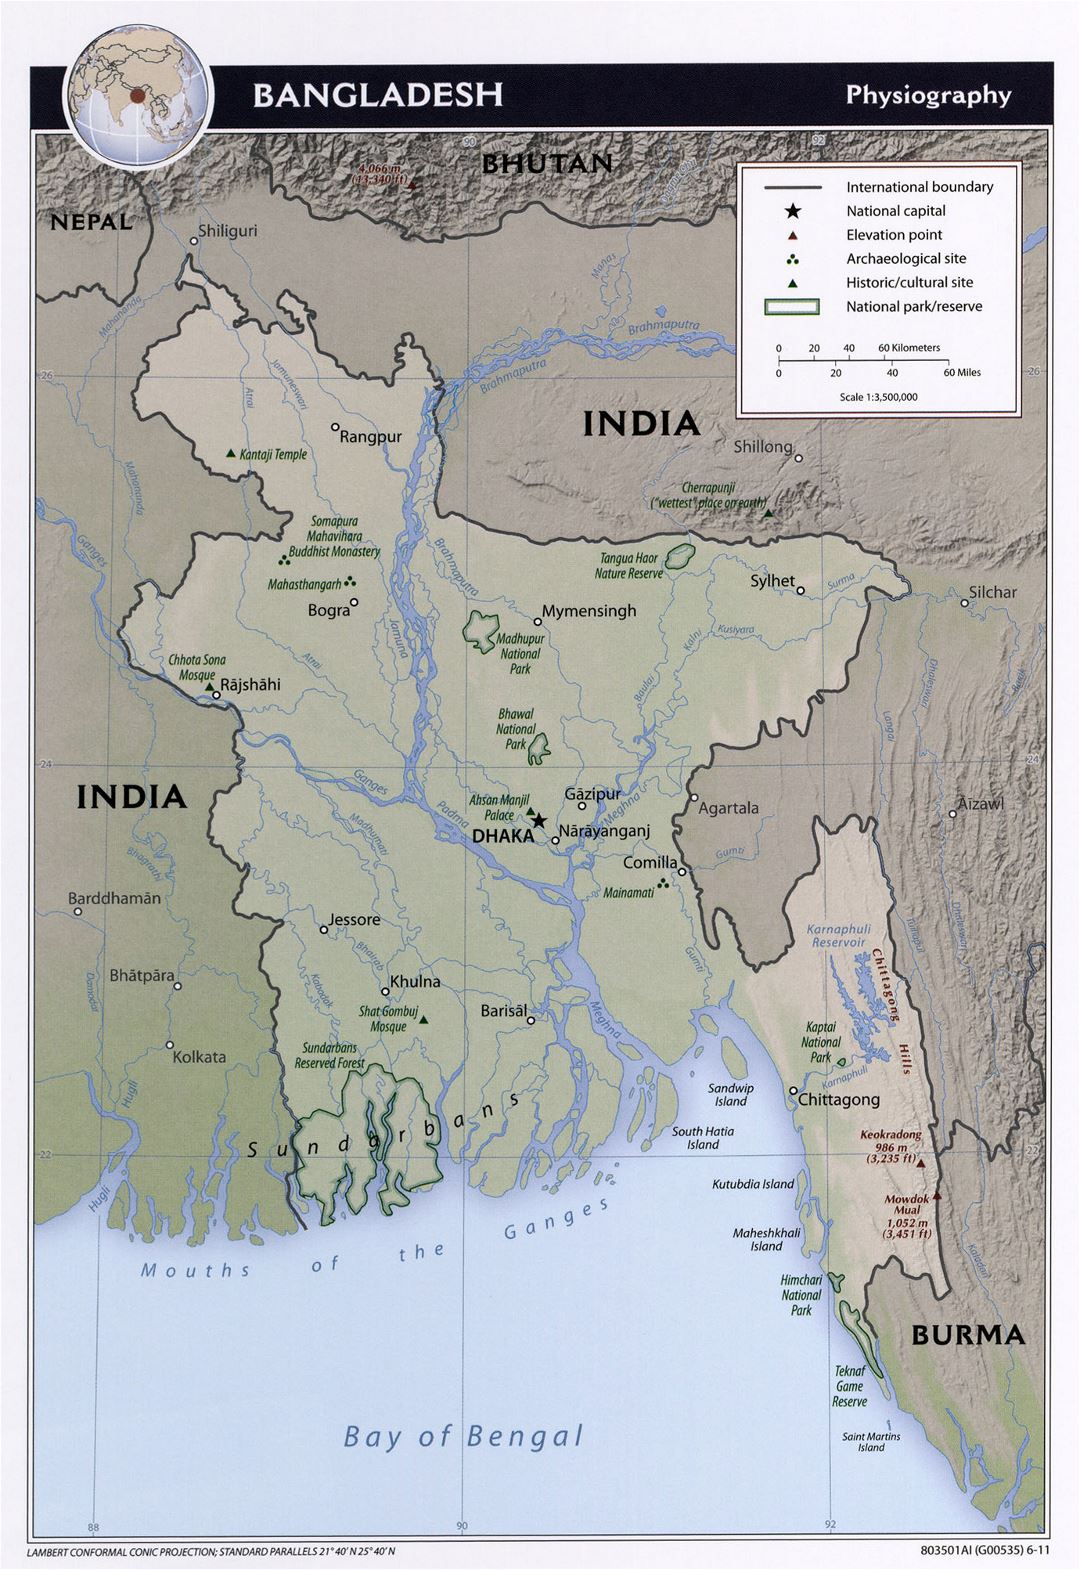 Grande detallado mapa de fisiografía de Bangladesh - 2011